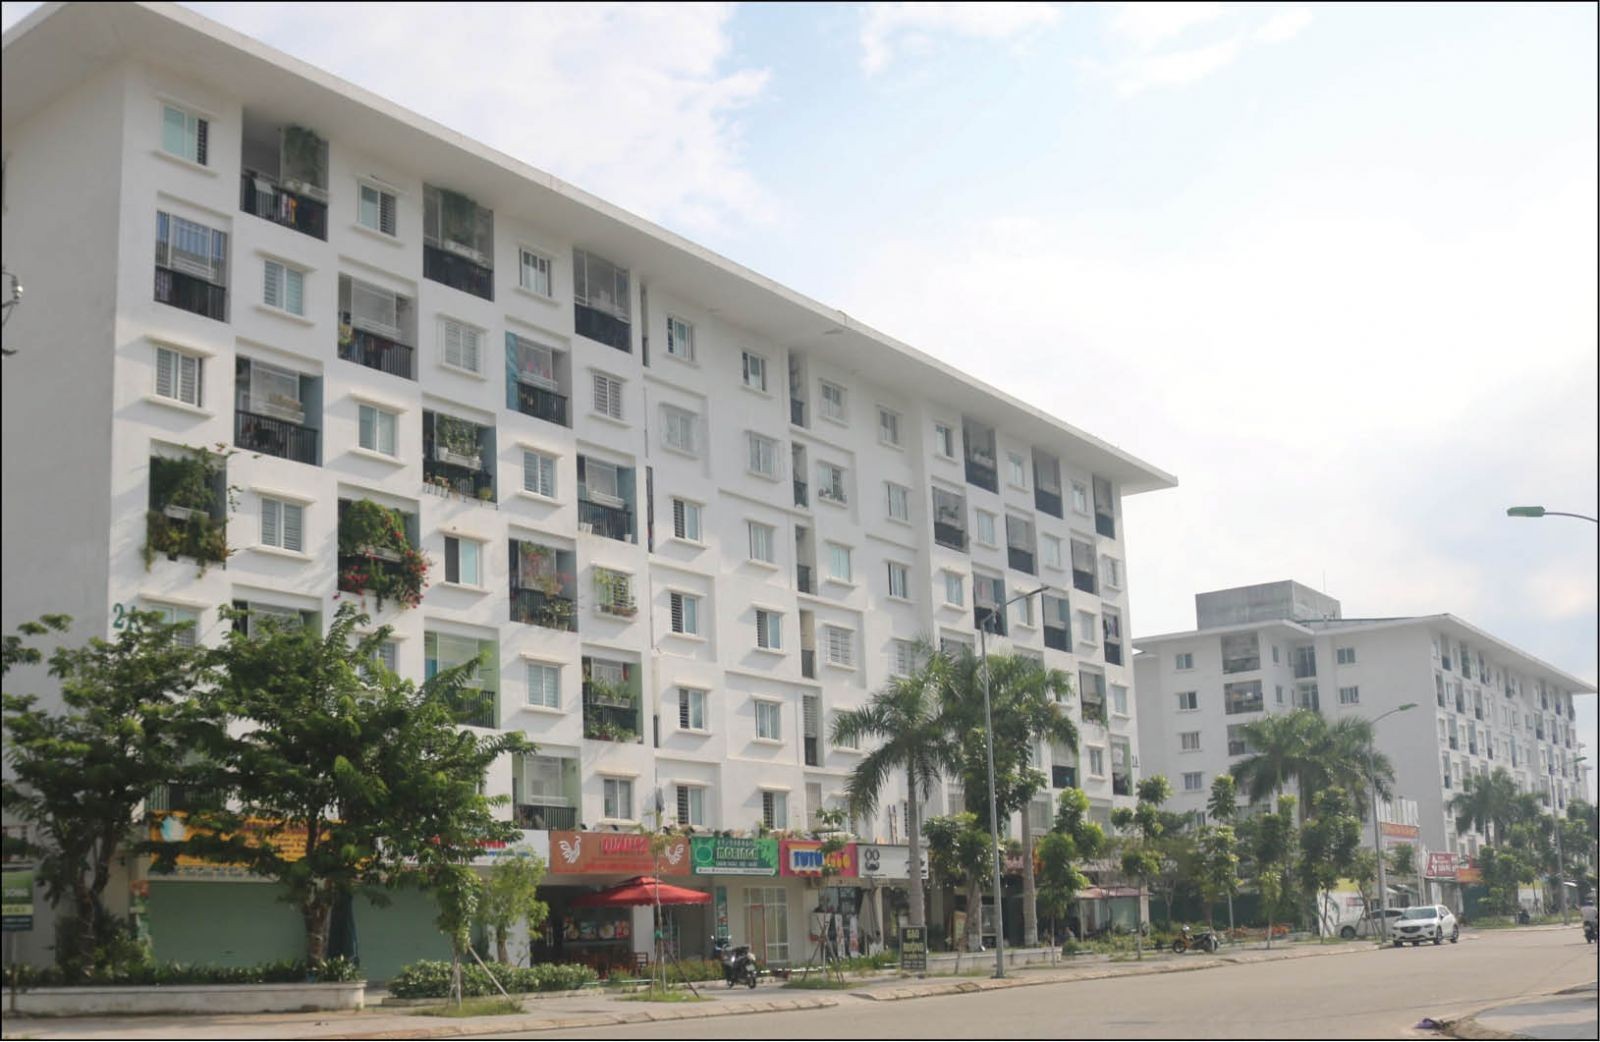 
Sở Xây dựng tỉnh Thừa Thiên - Huế đã kiến nghị Bộ, ngành Trung ương sớm nghiên cứu, sửa đổi và ban hành các quy định pháp luật liên quan đến nhà ở xã hội&nbsp;nhằm tháo gỡ các khó khăn, vướng mắc.
